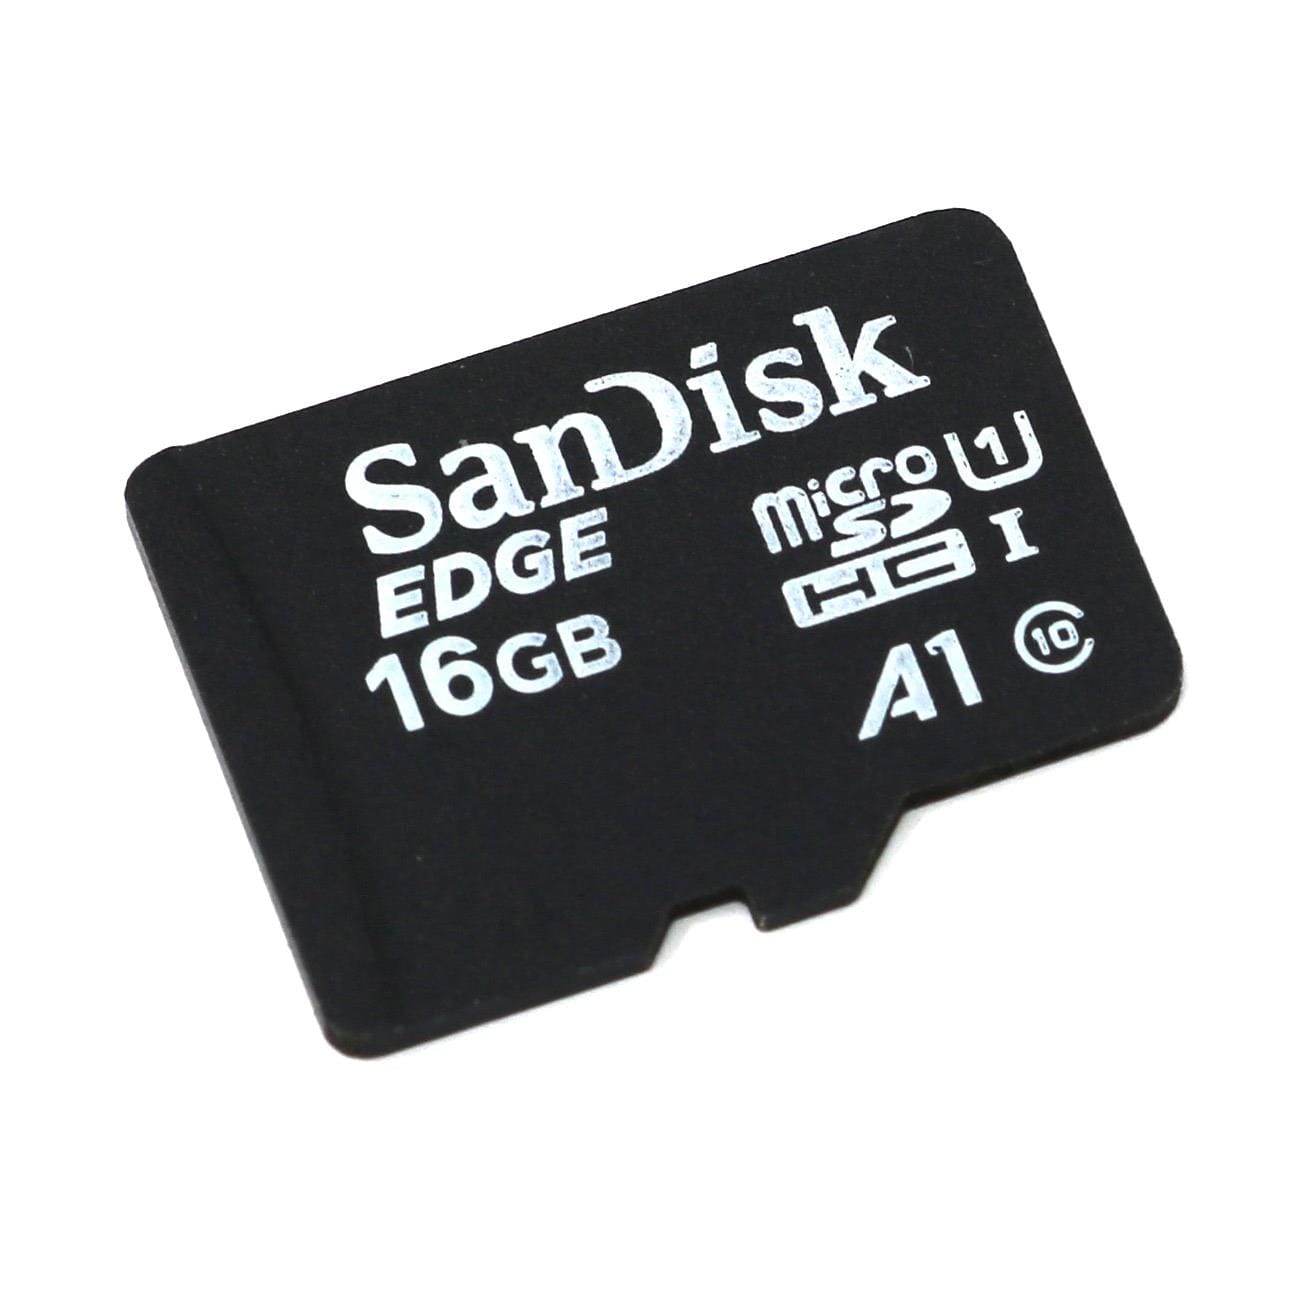 SanDisk MicroSD Card (Class 10 A1)